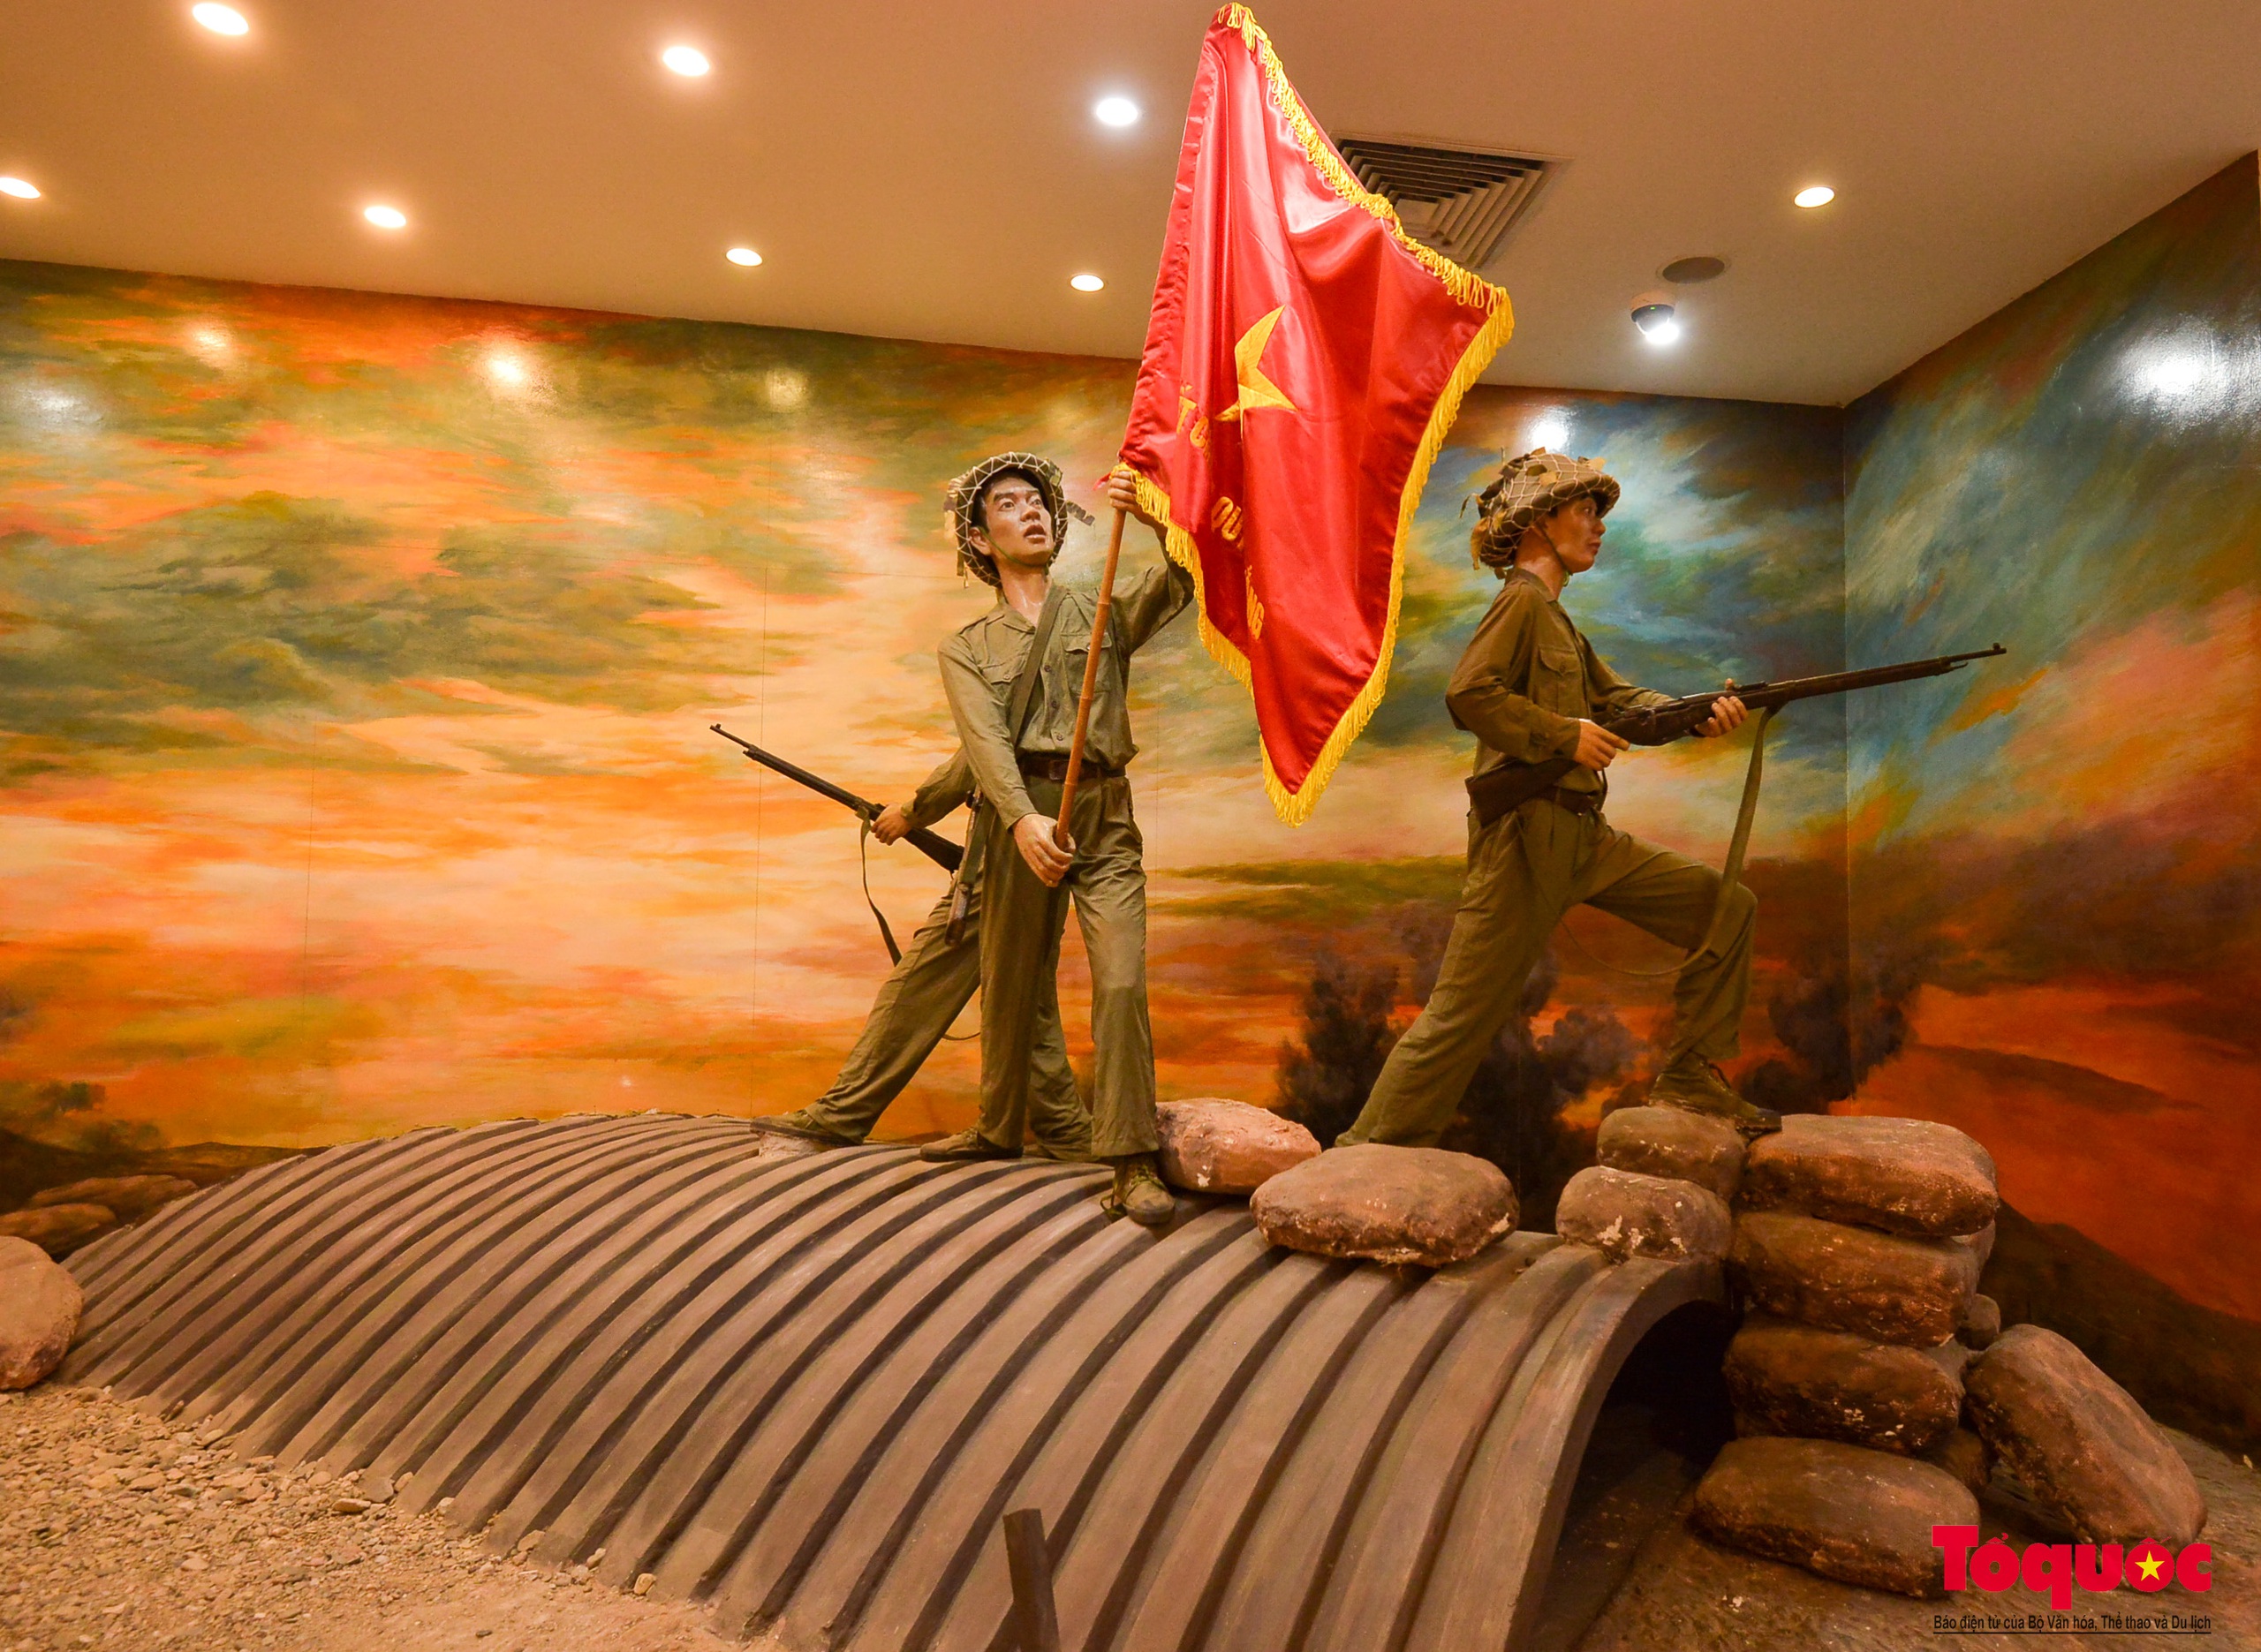 Bảo tàng Chiến thắng lịch sử Điện Biên Phủ - điểm đến ý nghĩa trong những ngày tháng 5 - Ảnh 16.